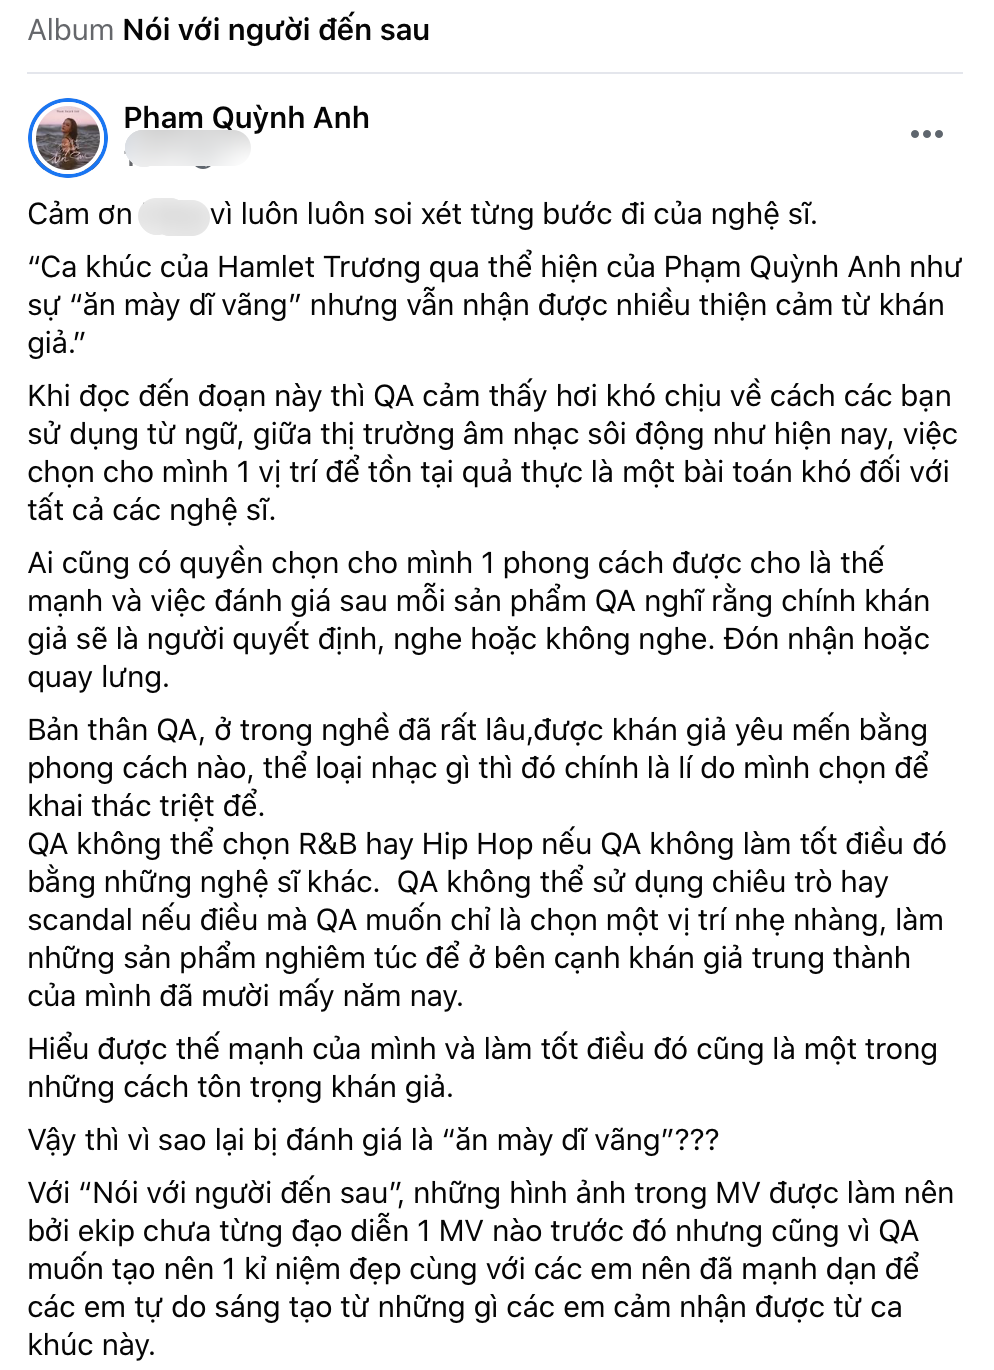 
Phạm Quỳnh Anh lên tiếng khi MV bị chê bai. Ảnh: Chụp màn hình